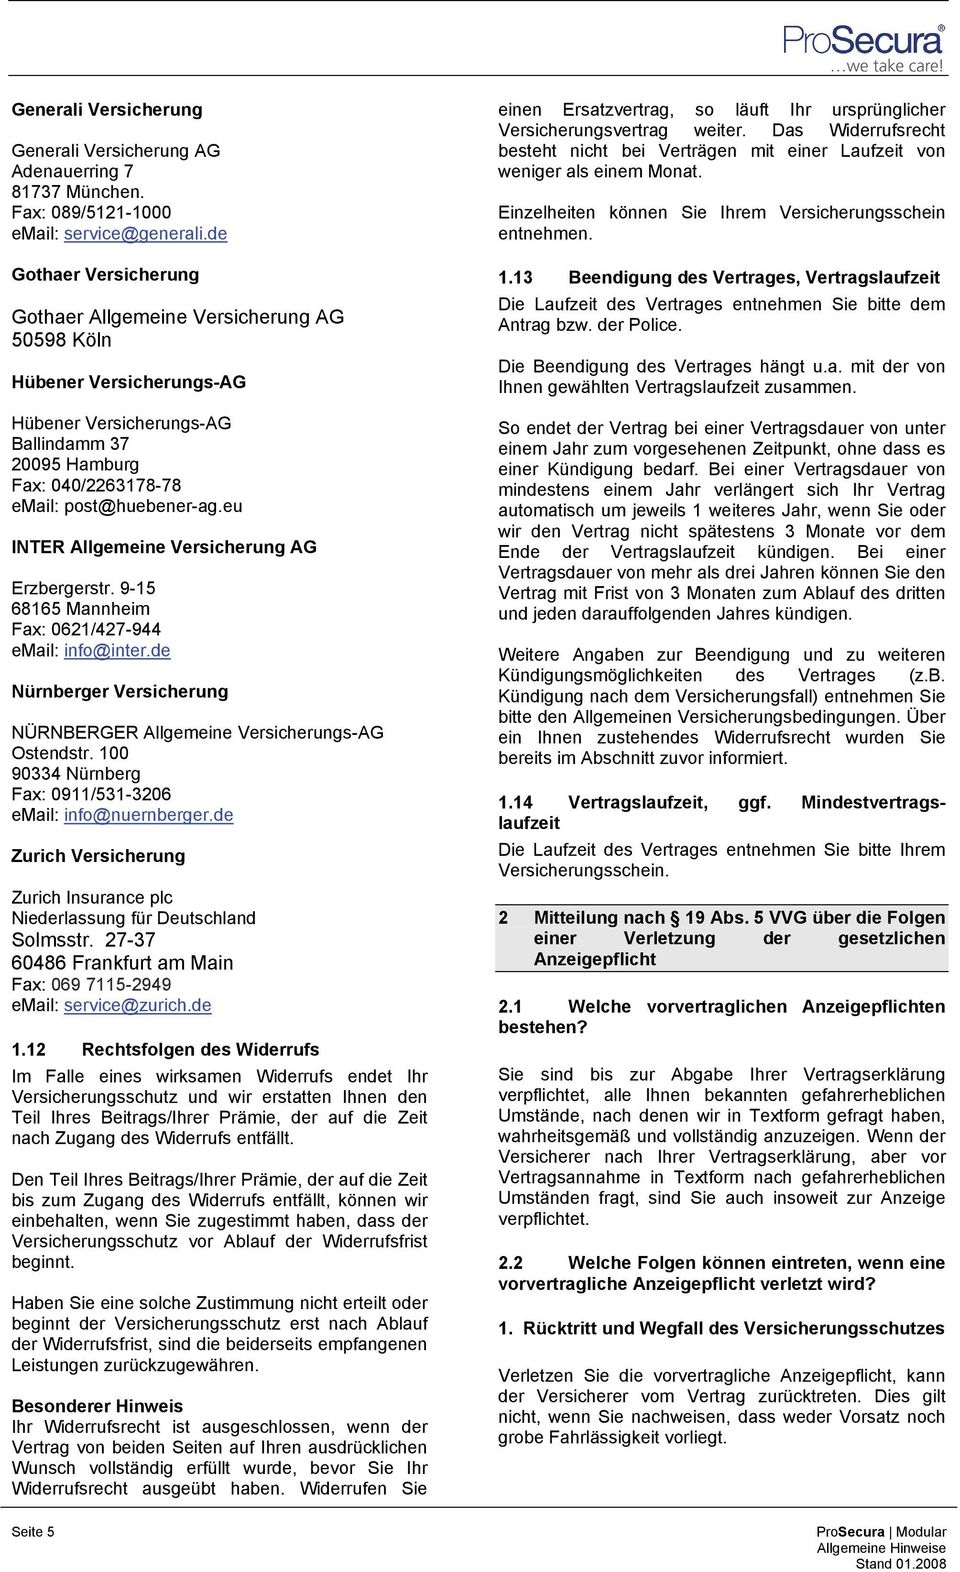 eu INTER Allgemeine Versicherung AG Erzbergerstr. 9-15 68165 Mannheim Fax: 0621/427-944 email: info@inter.de Nürnberger Versicherung NÜRNBERGER Allgemeine Versicherungs-AG Ostendstr.